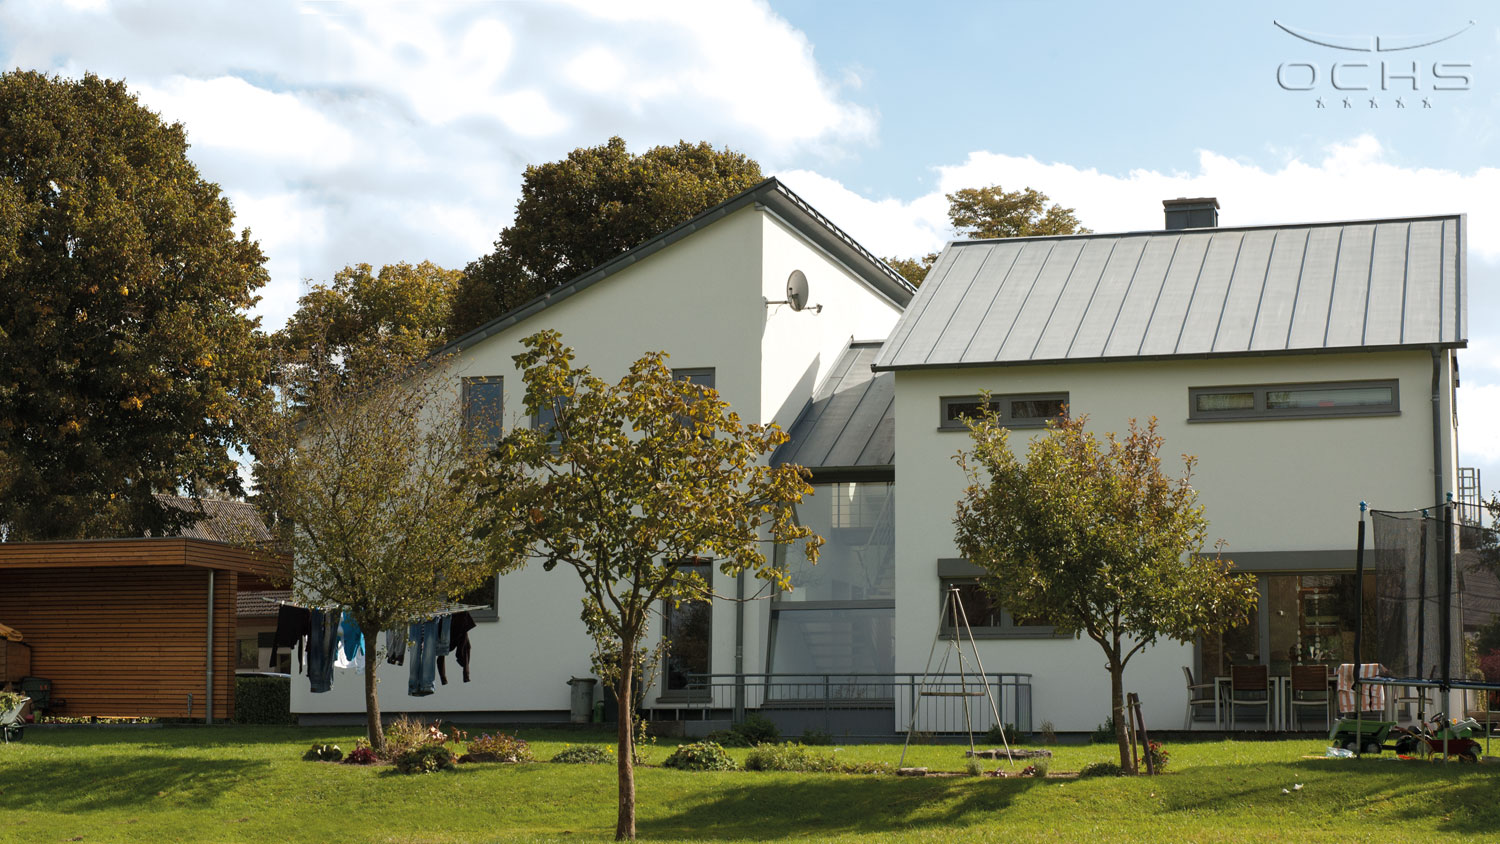 Wohnhaus in Holzrahmenbauweise in Mohrbach - mit Carport